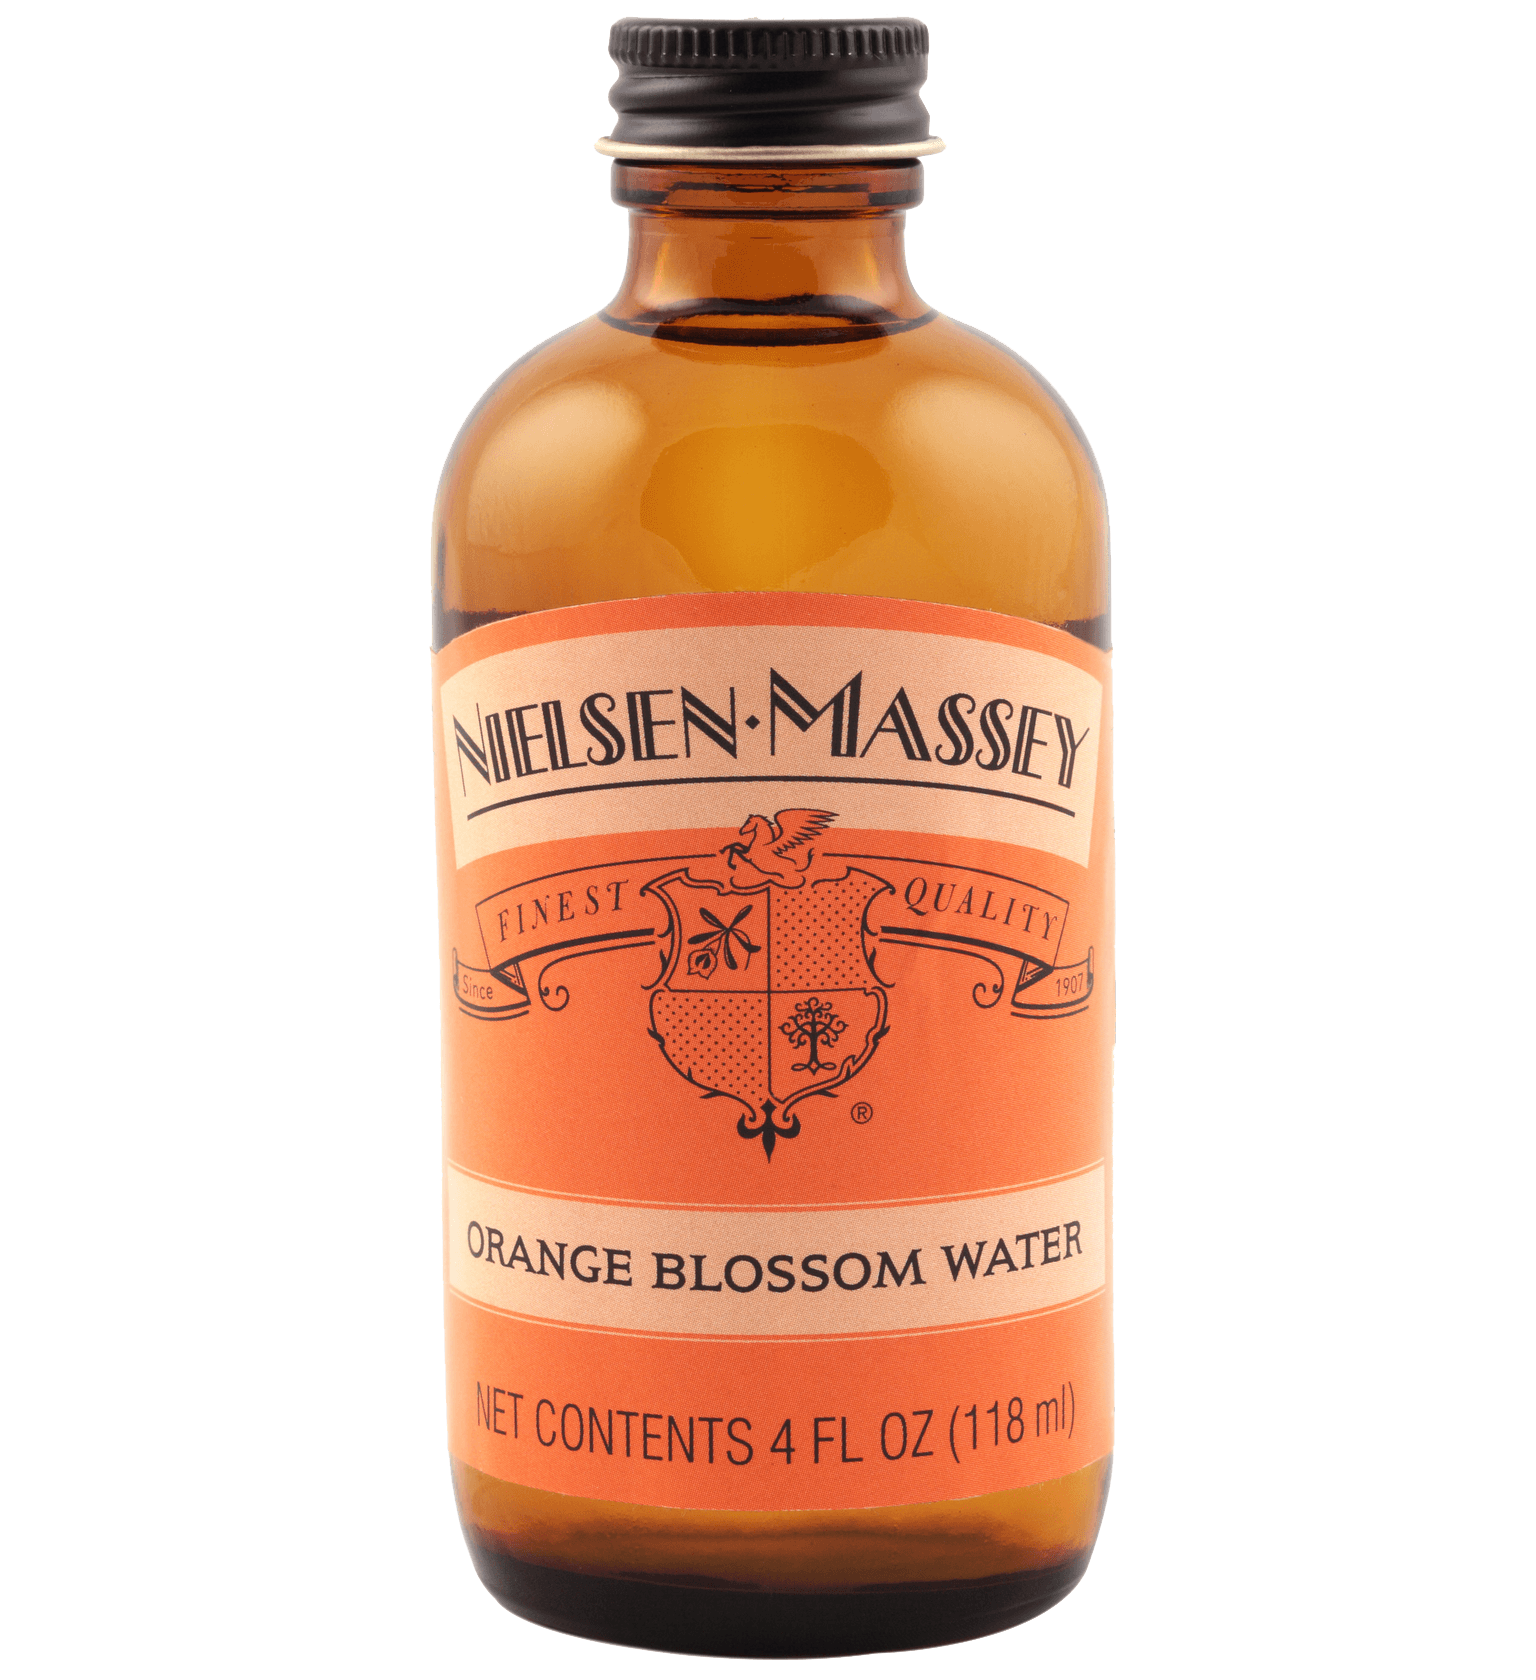 Nielsen-Massey Orange Blossom Water 60ml